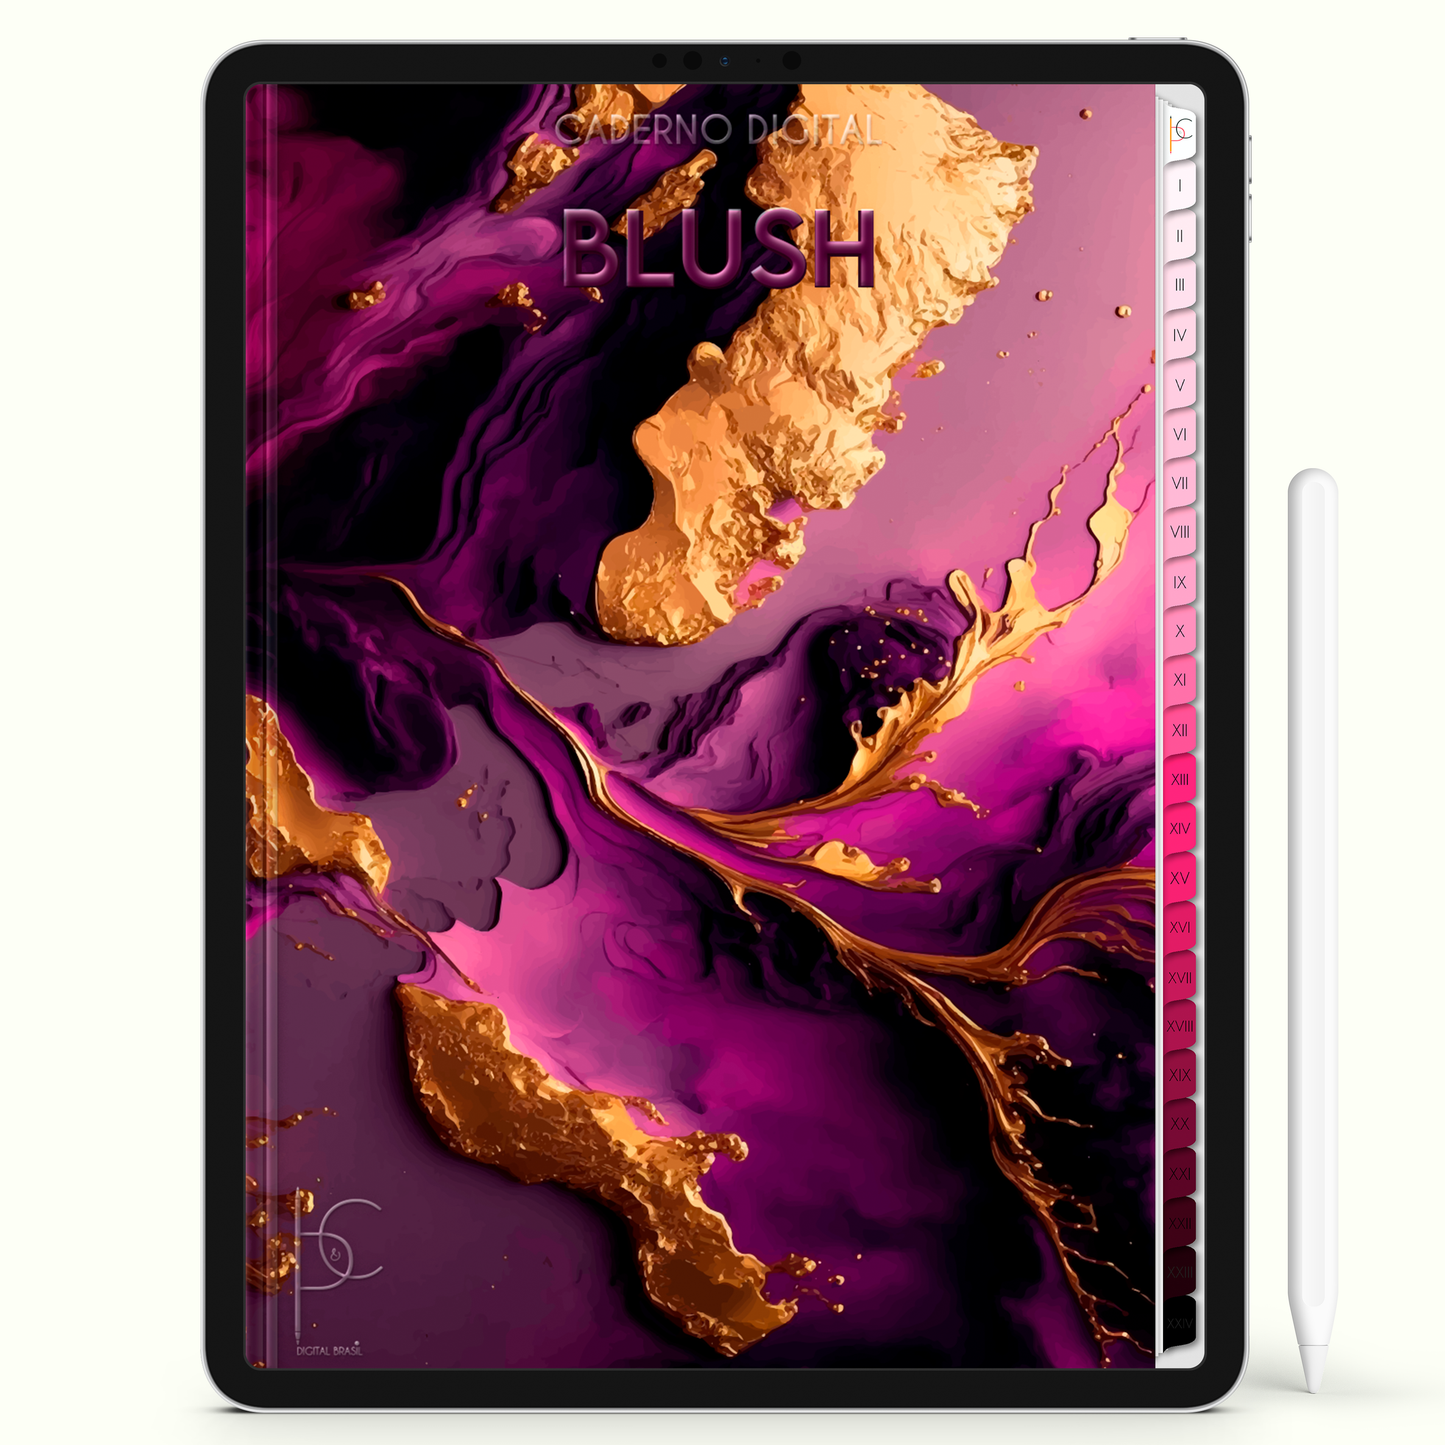 Caderno Digital Blush Deep Rose Serenity Rosa Profundo Serenidade 24 Matérias • iPad Tablet Android • Download instantâneo • Sustentável